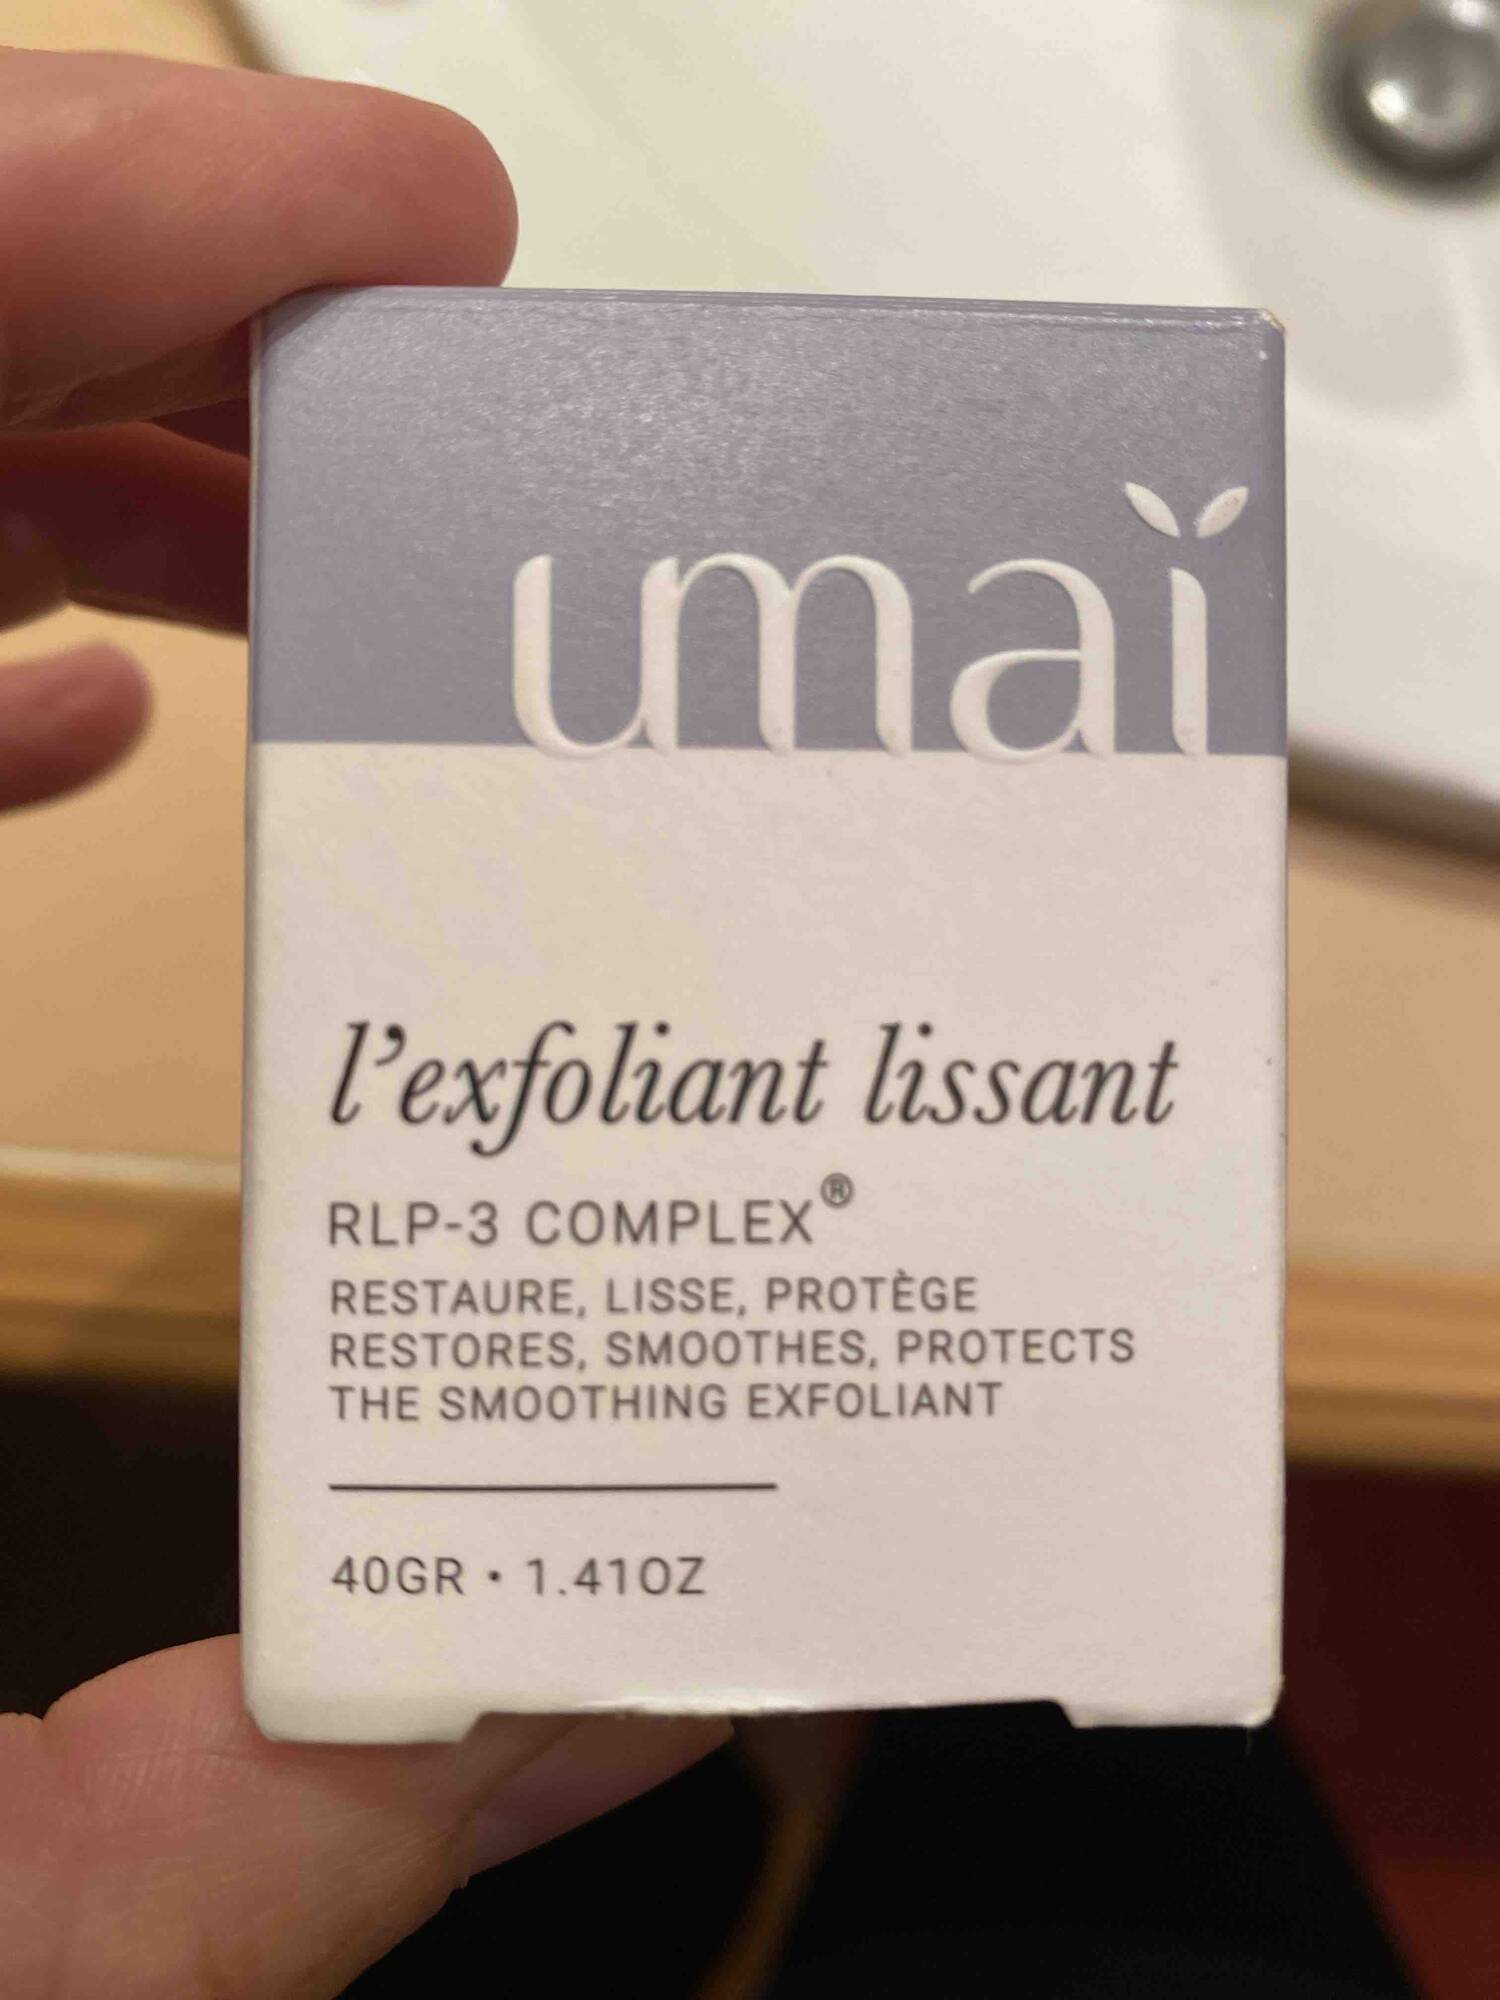 UMAÏ - RLP-3 complex - L'exfoliant lissant